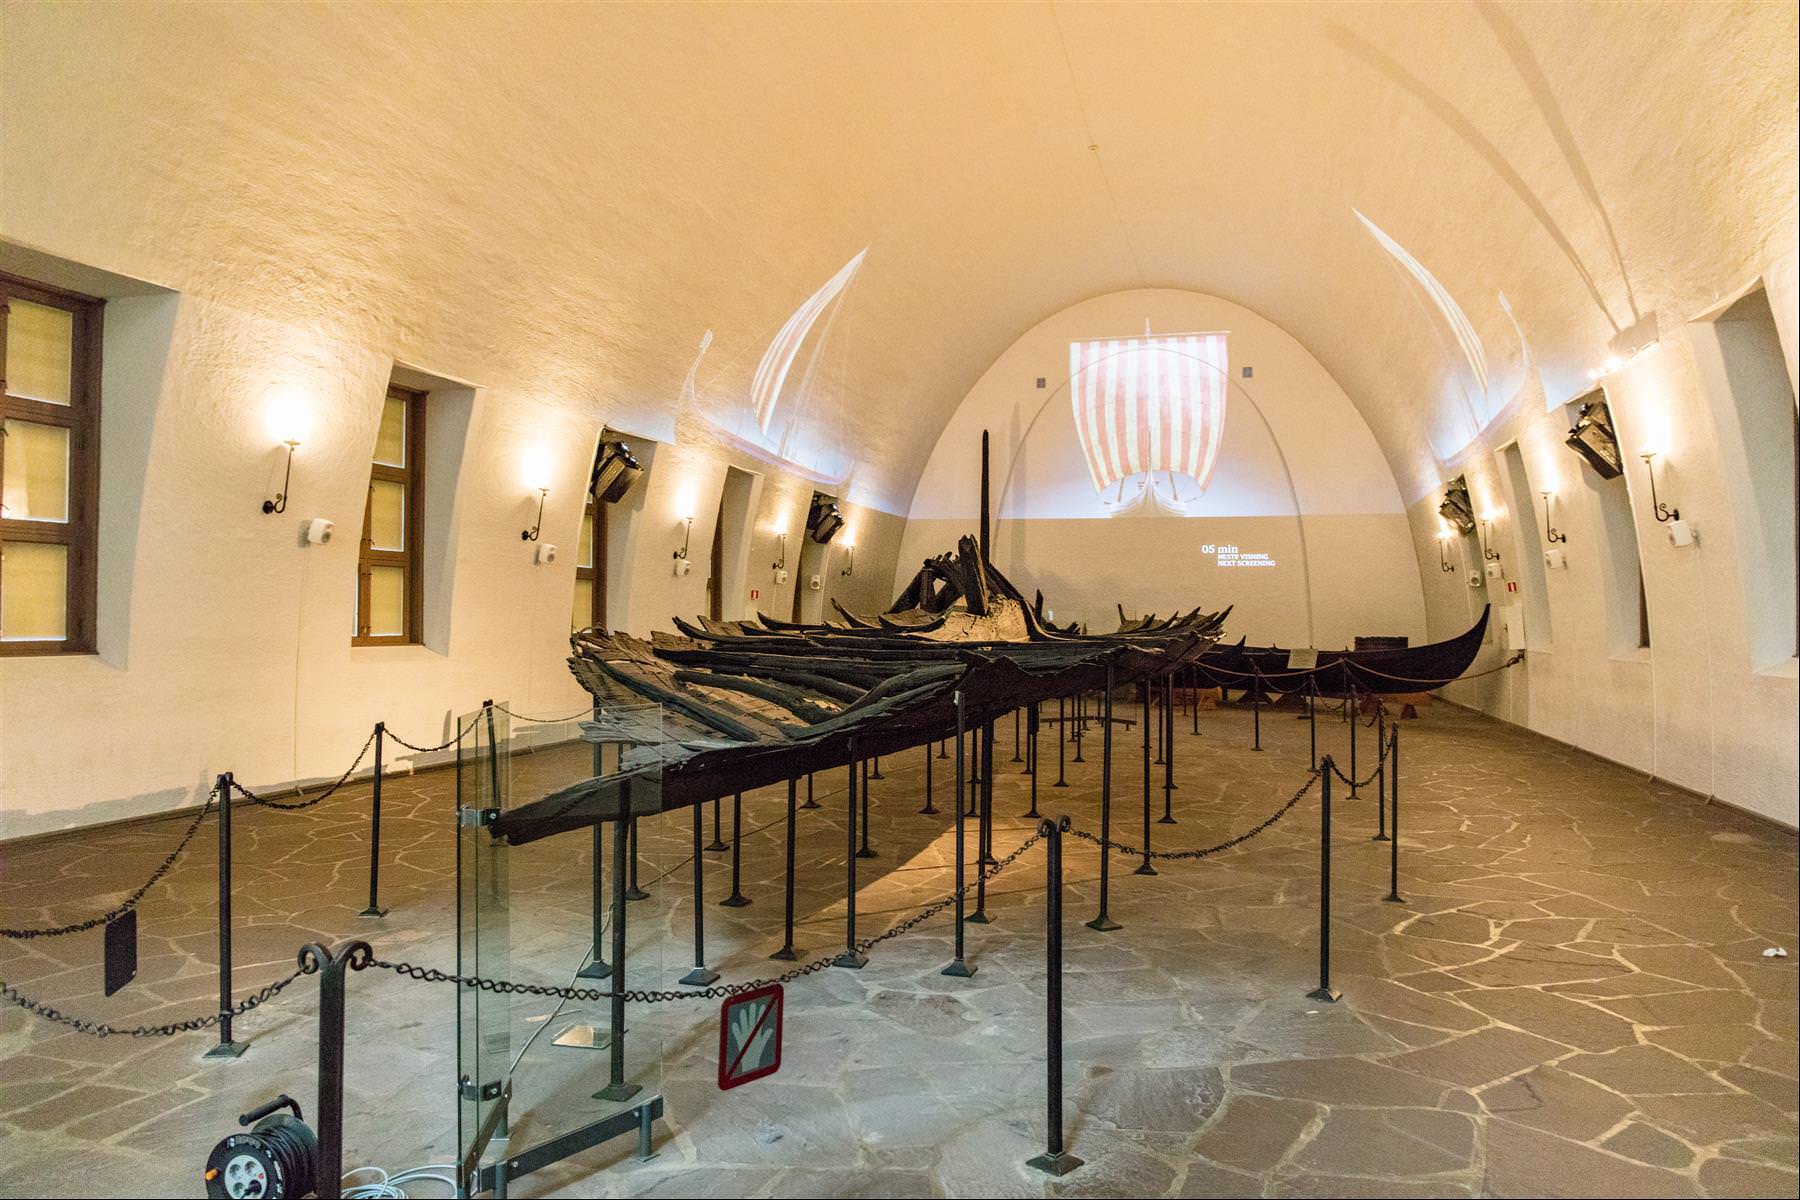 [挪威/奧斯陸] 尋找北歐維京人傳奇 - 維京船博物館 Viking Ship Museum